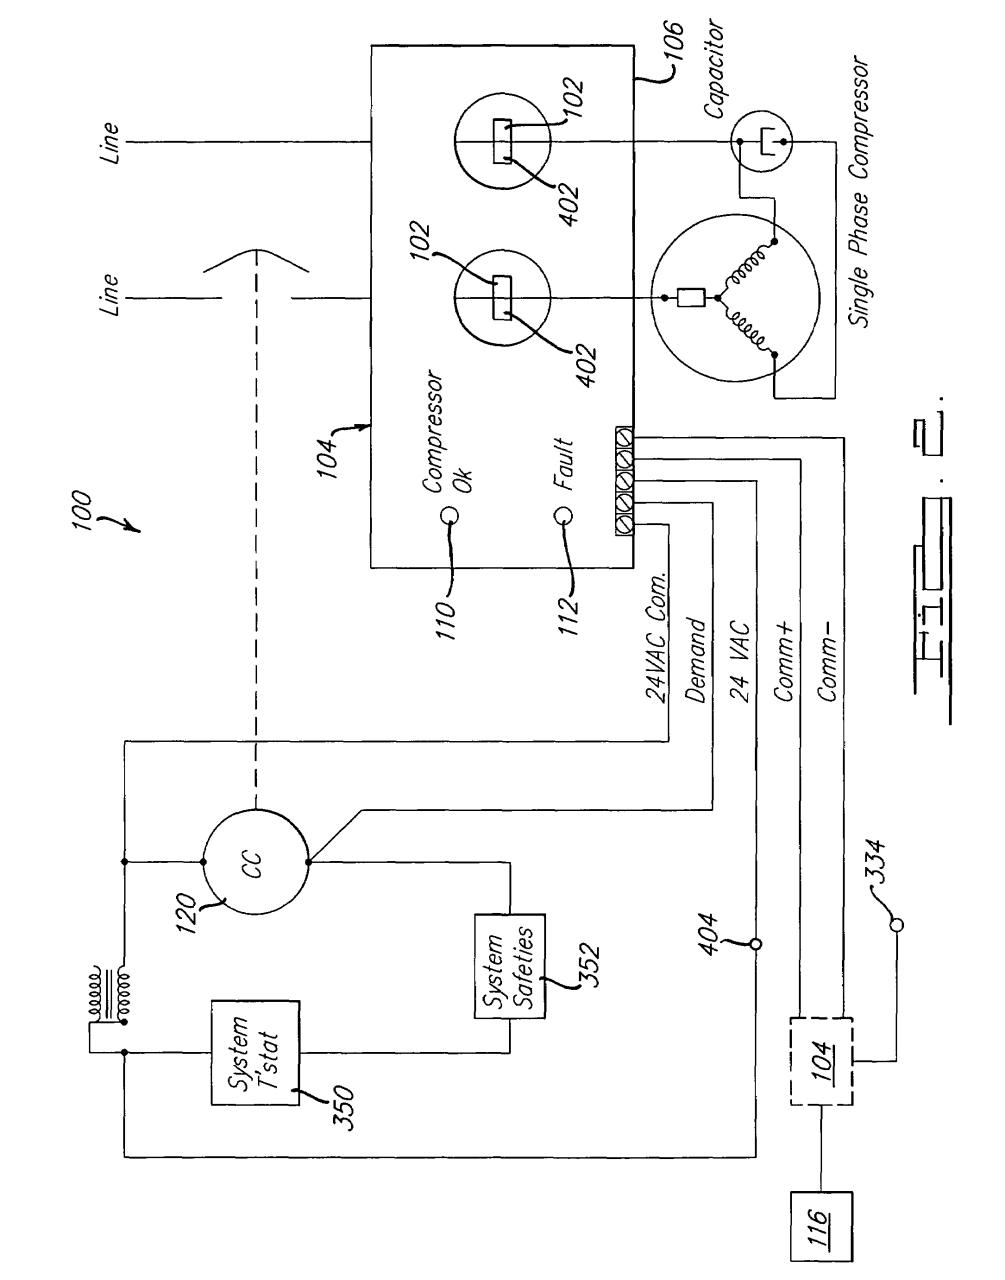 Home Ac Compressor Wiring Diagram